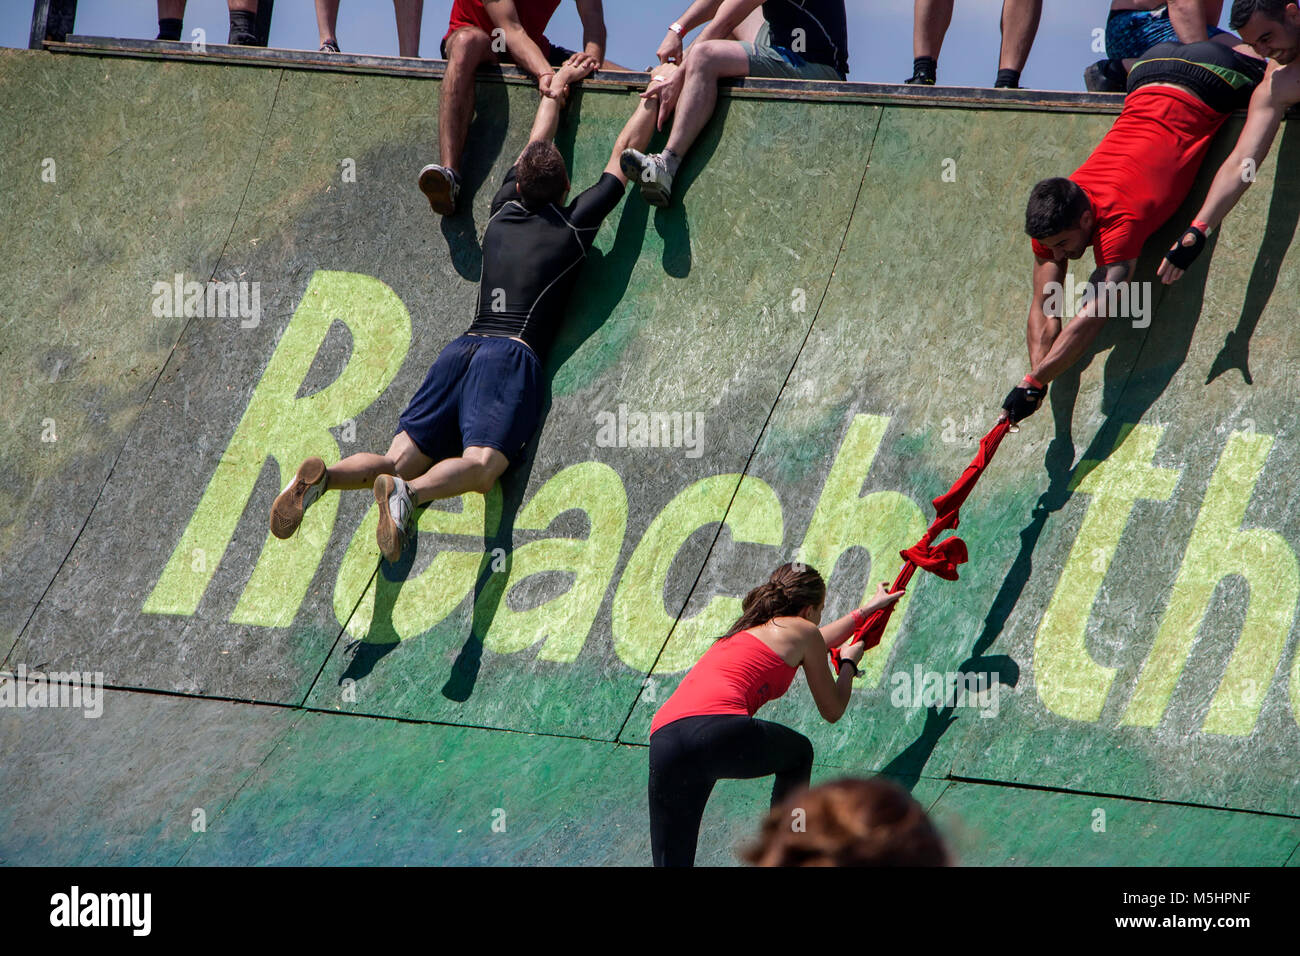 Les hommes sont en déplaçant leurs coéquipiers pour les aider à monter un mur au cours de la force de la Légion de course courir tenue à Sofia, Bulgarie le 26 juillet 2014 Banque D'Images